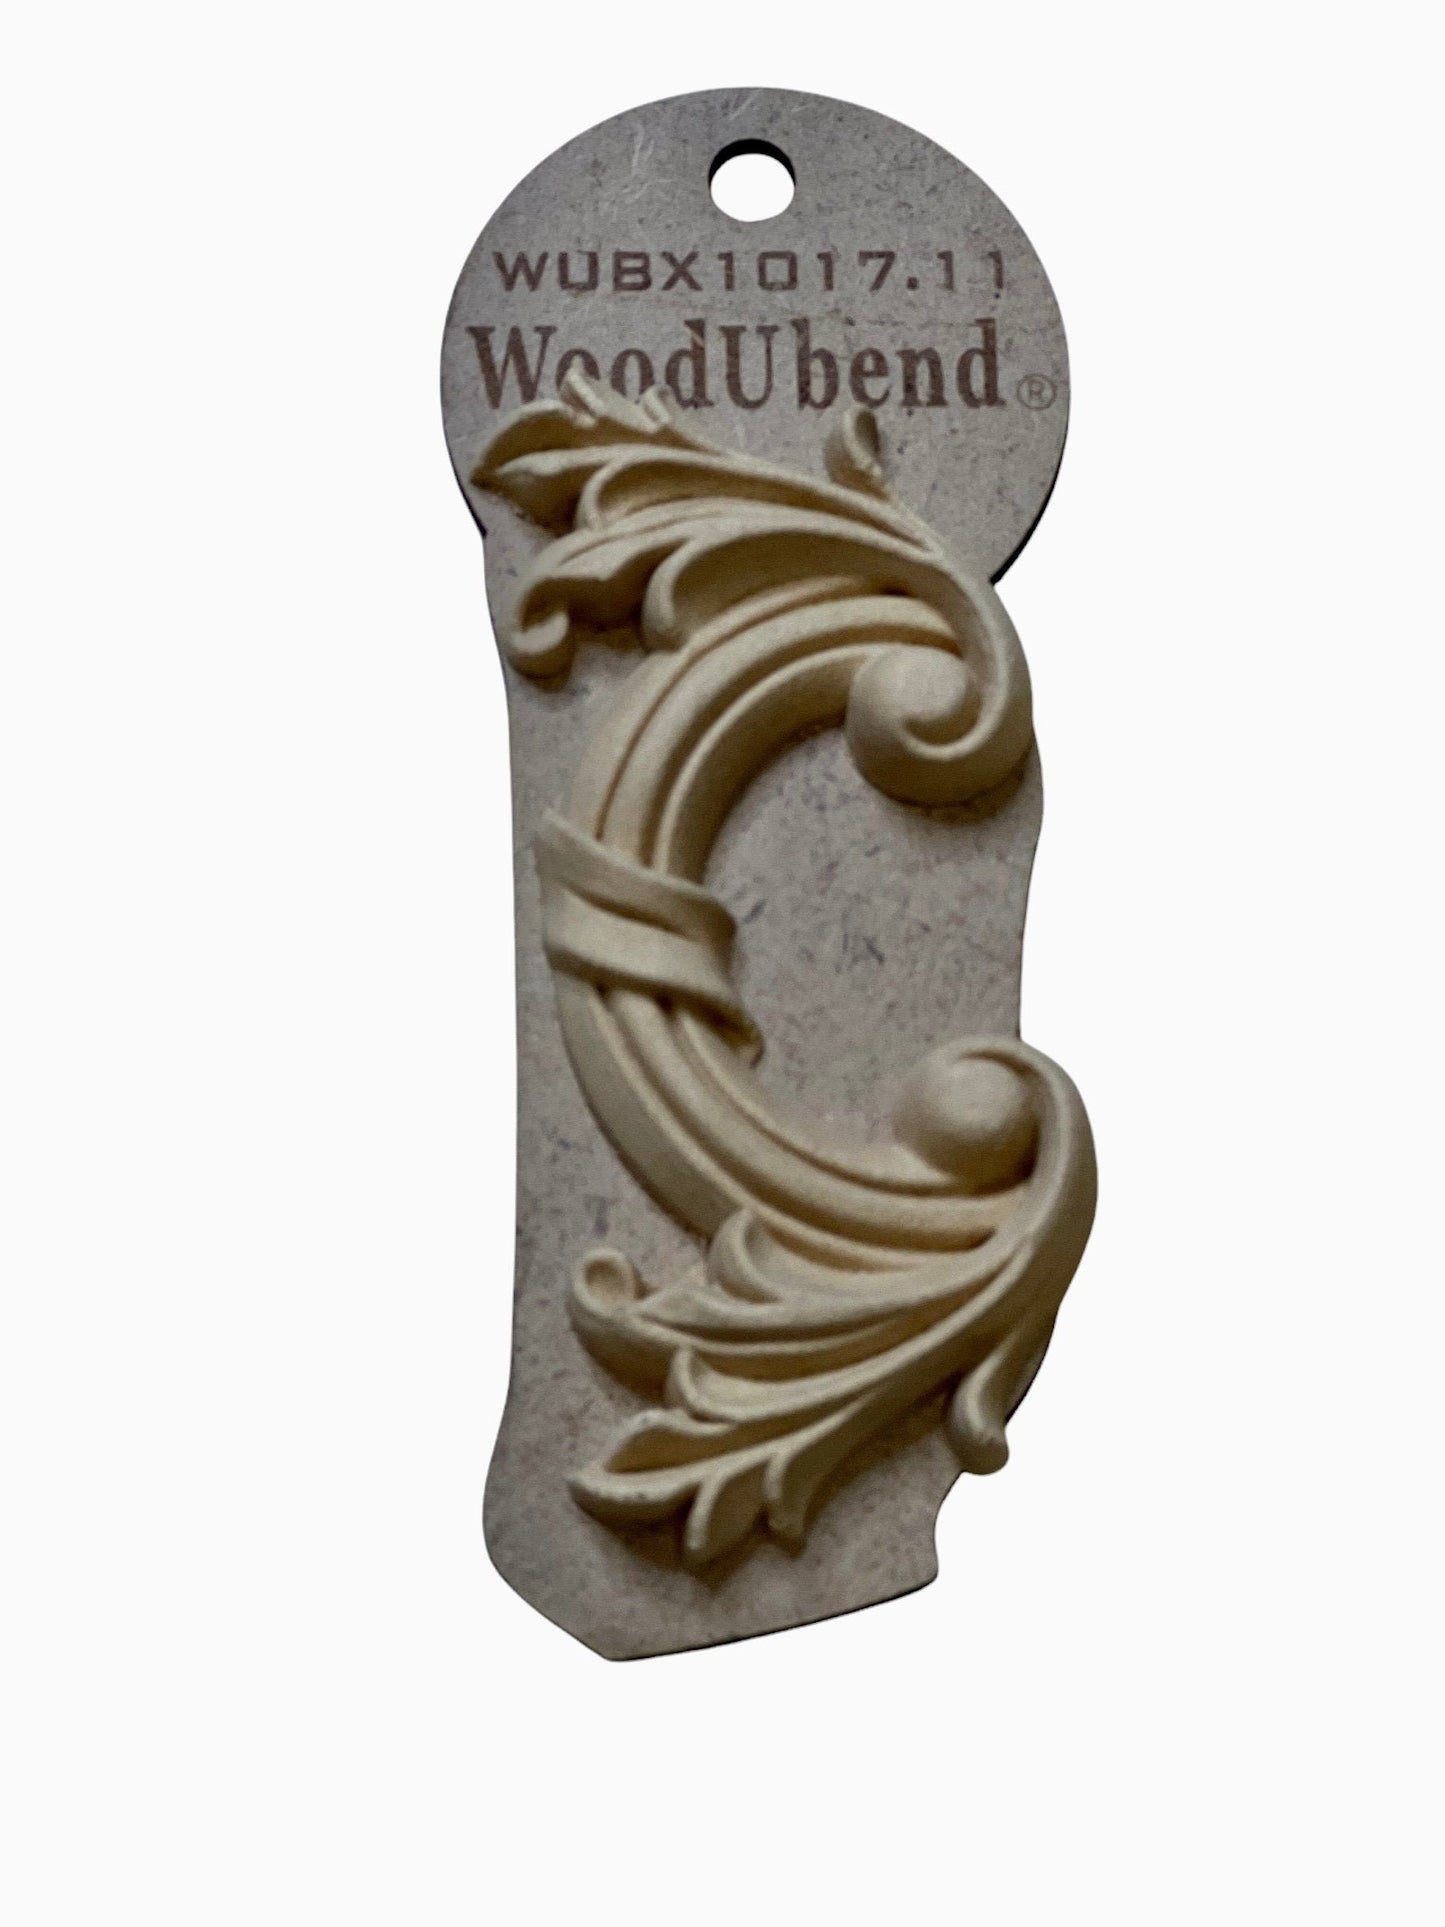 Woodubend scroll pair bendable moulding 1017.11